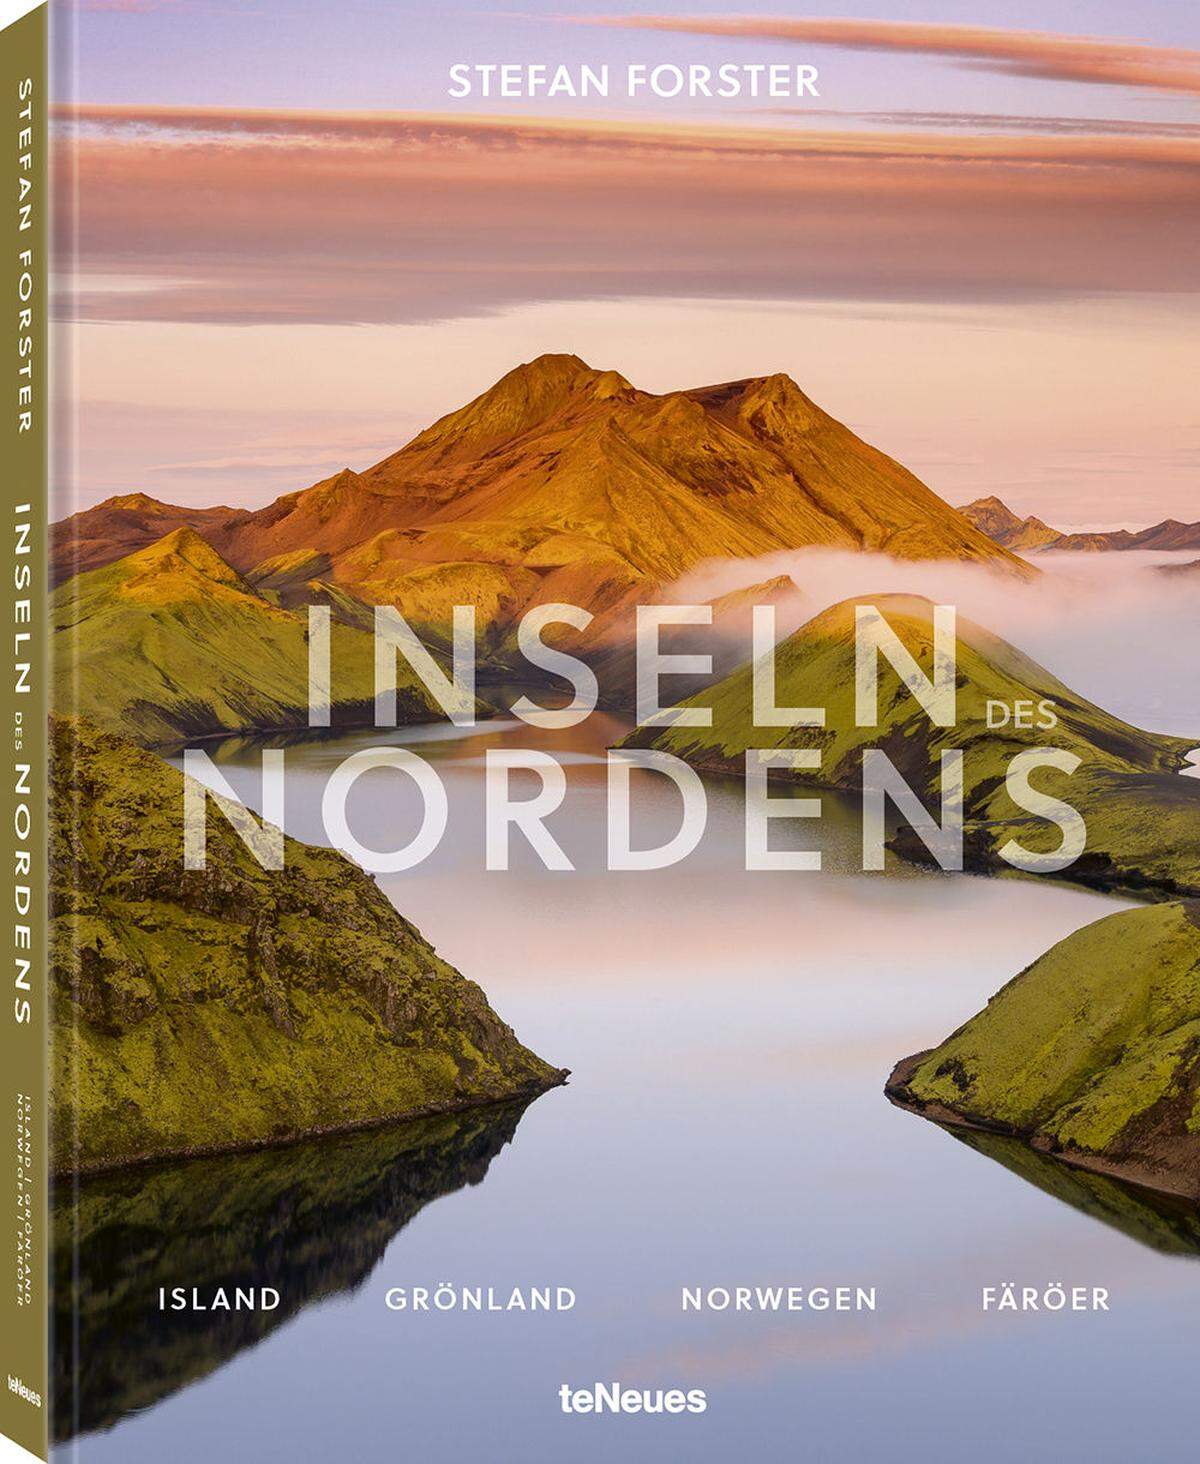 Weitere Naturschauspiele sind in "Inseln des Nordens" von Stefan Forster zu entdecken. Erschienen im Verlag teNeues, 264 Seiten, € 39,90.